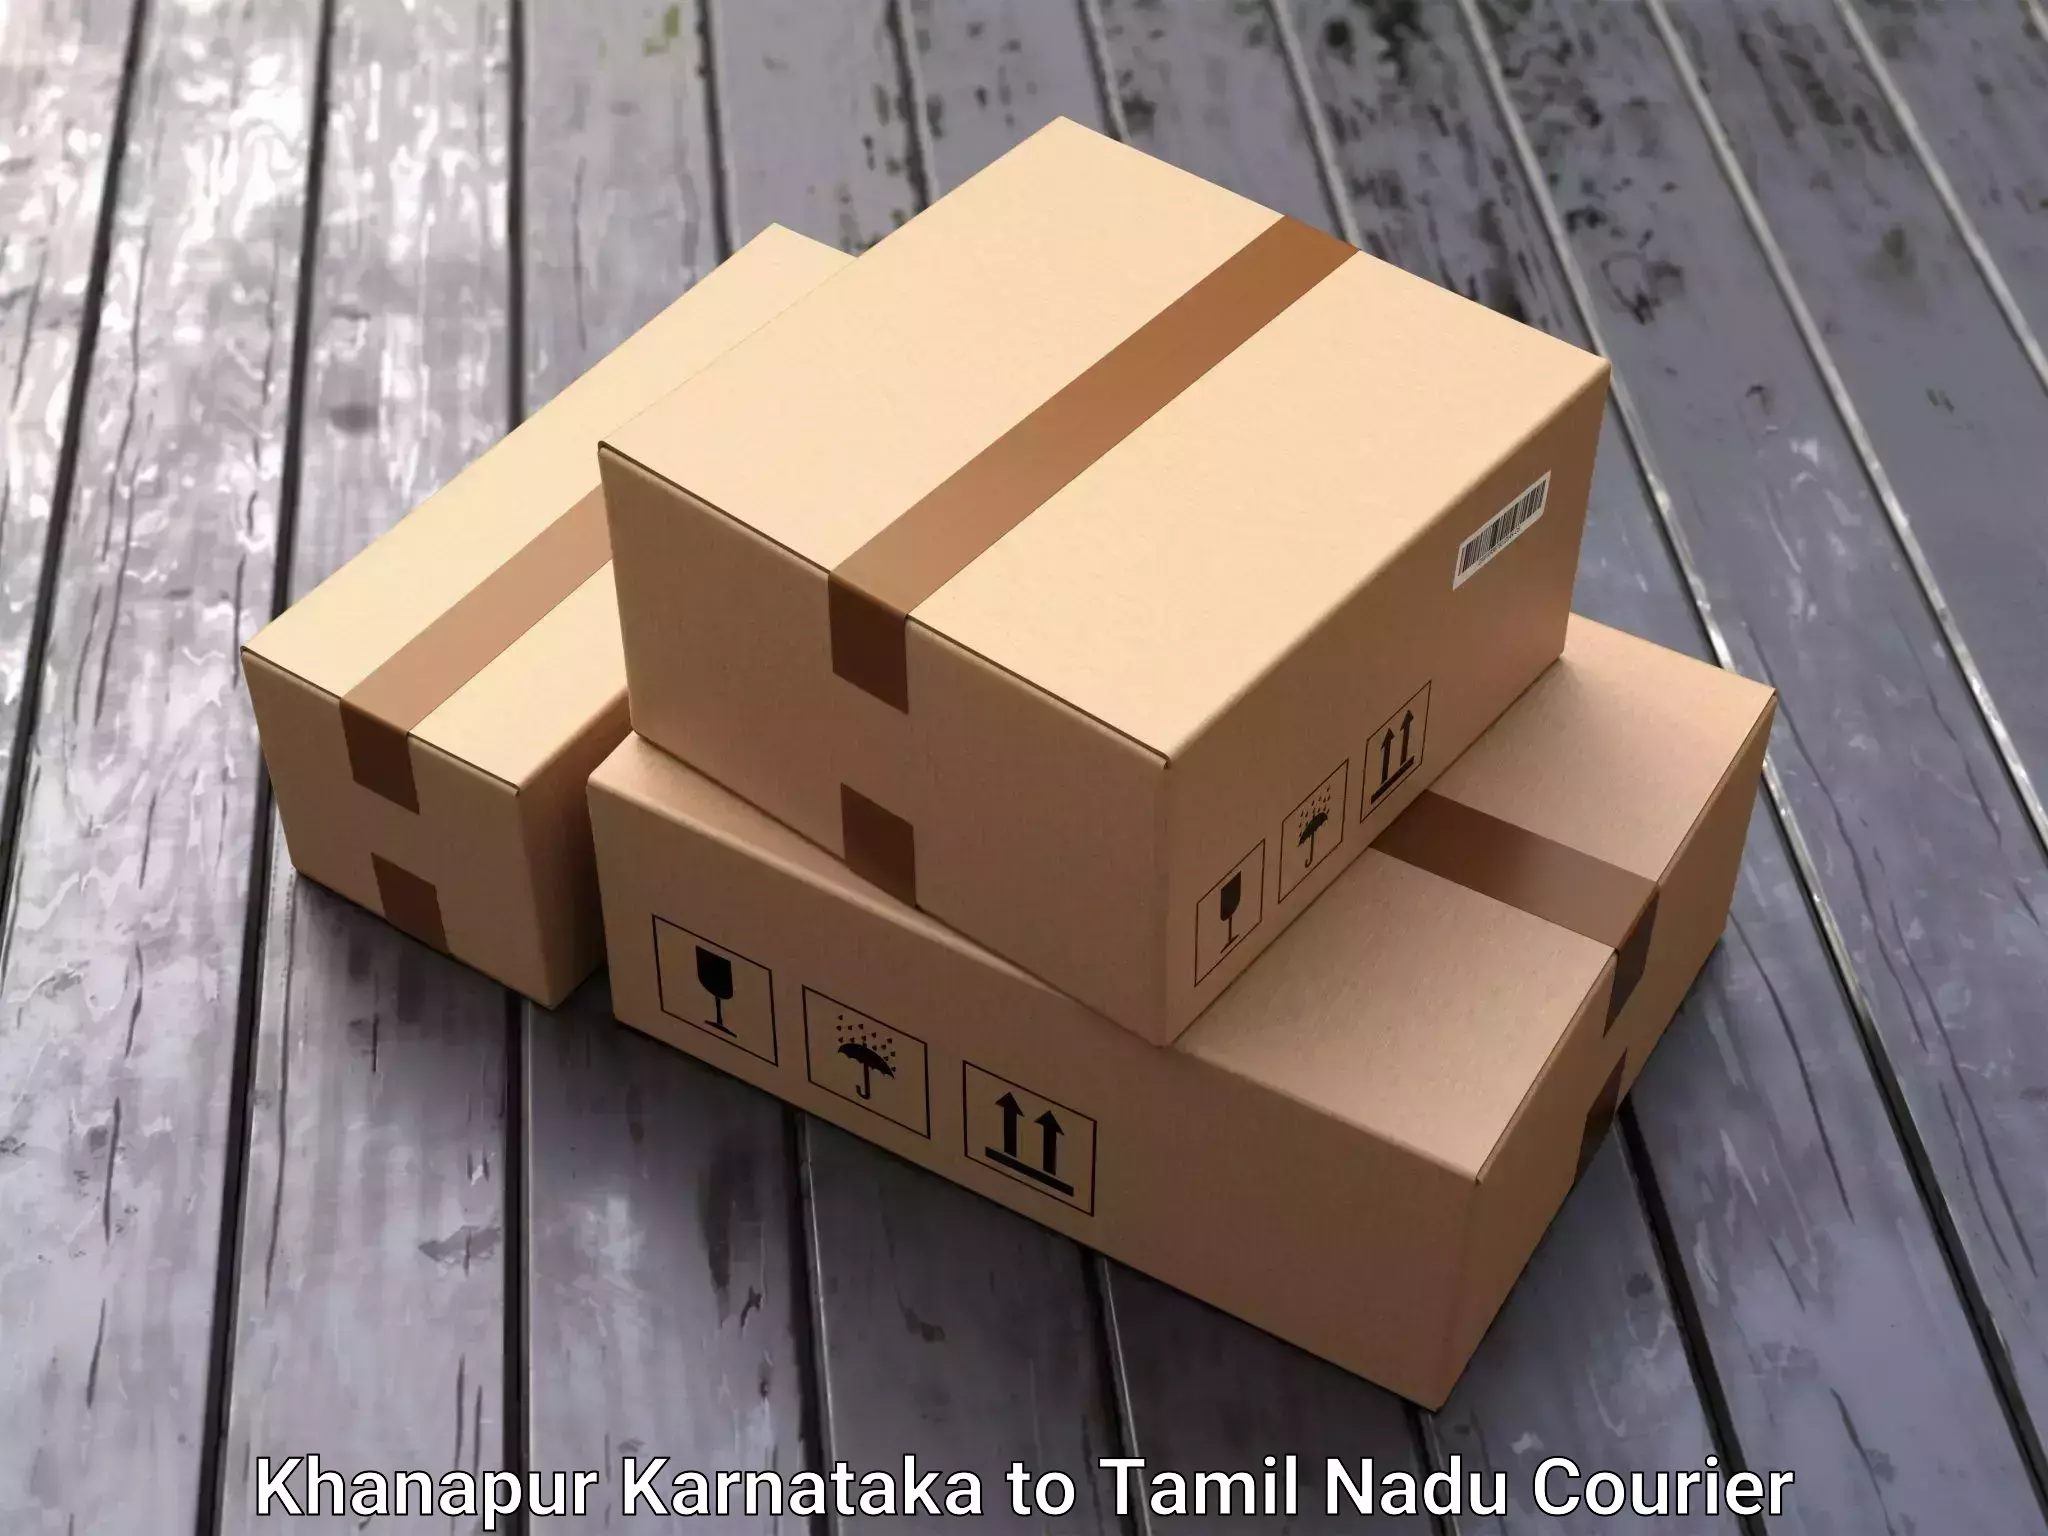 Stress-free household moving Khanapur Karnataka to Tamil Nadu